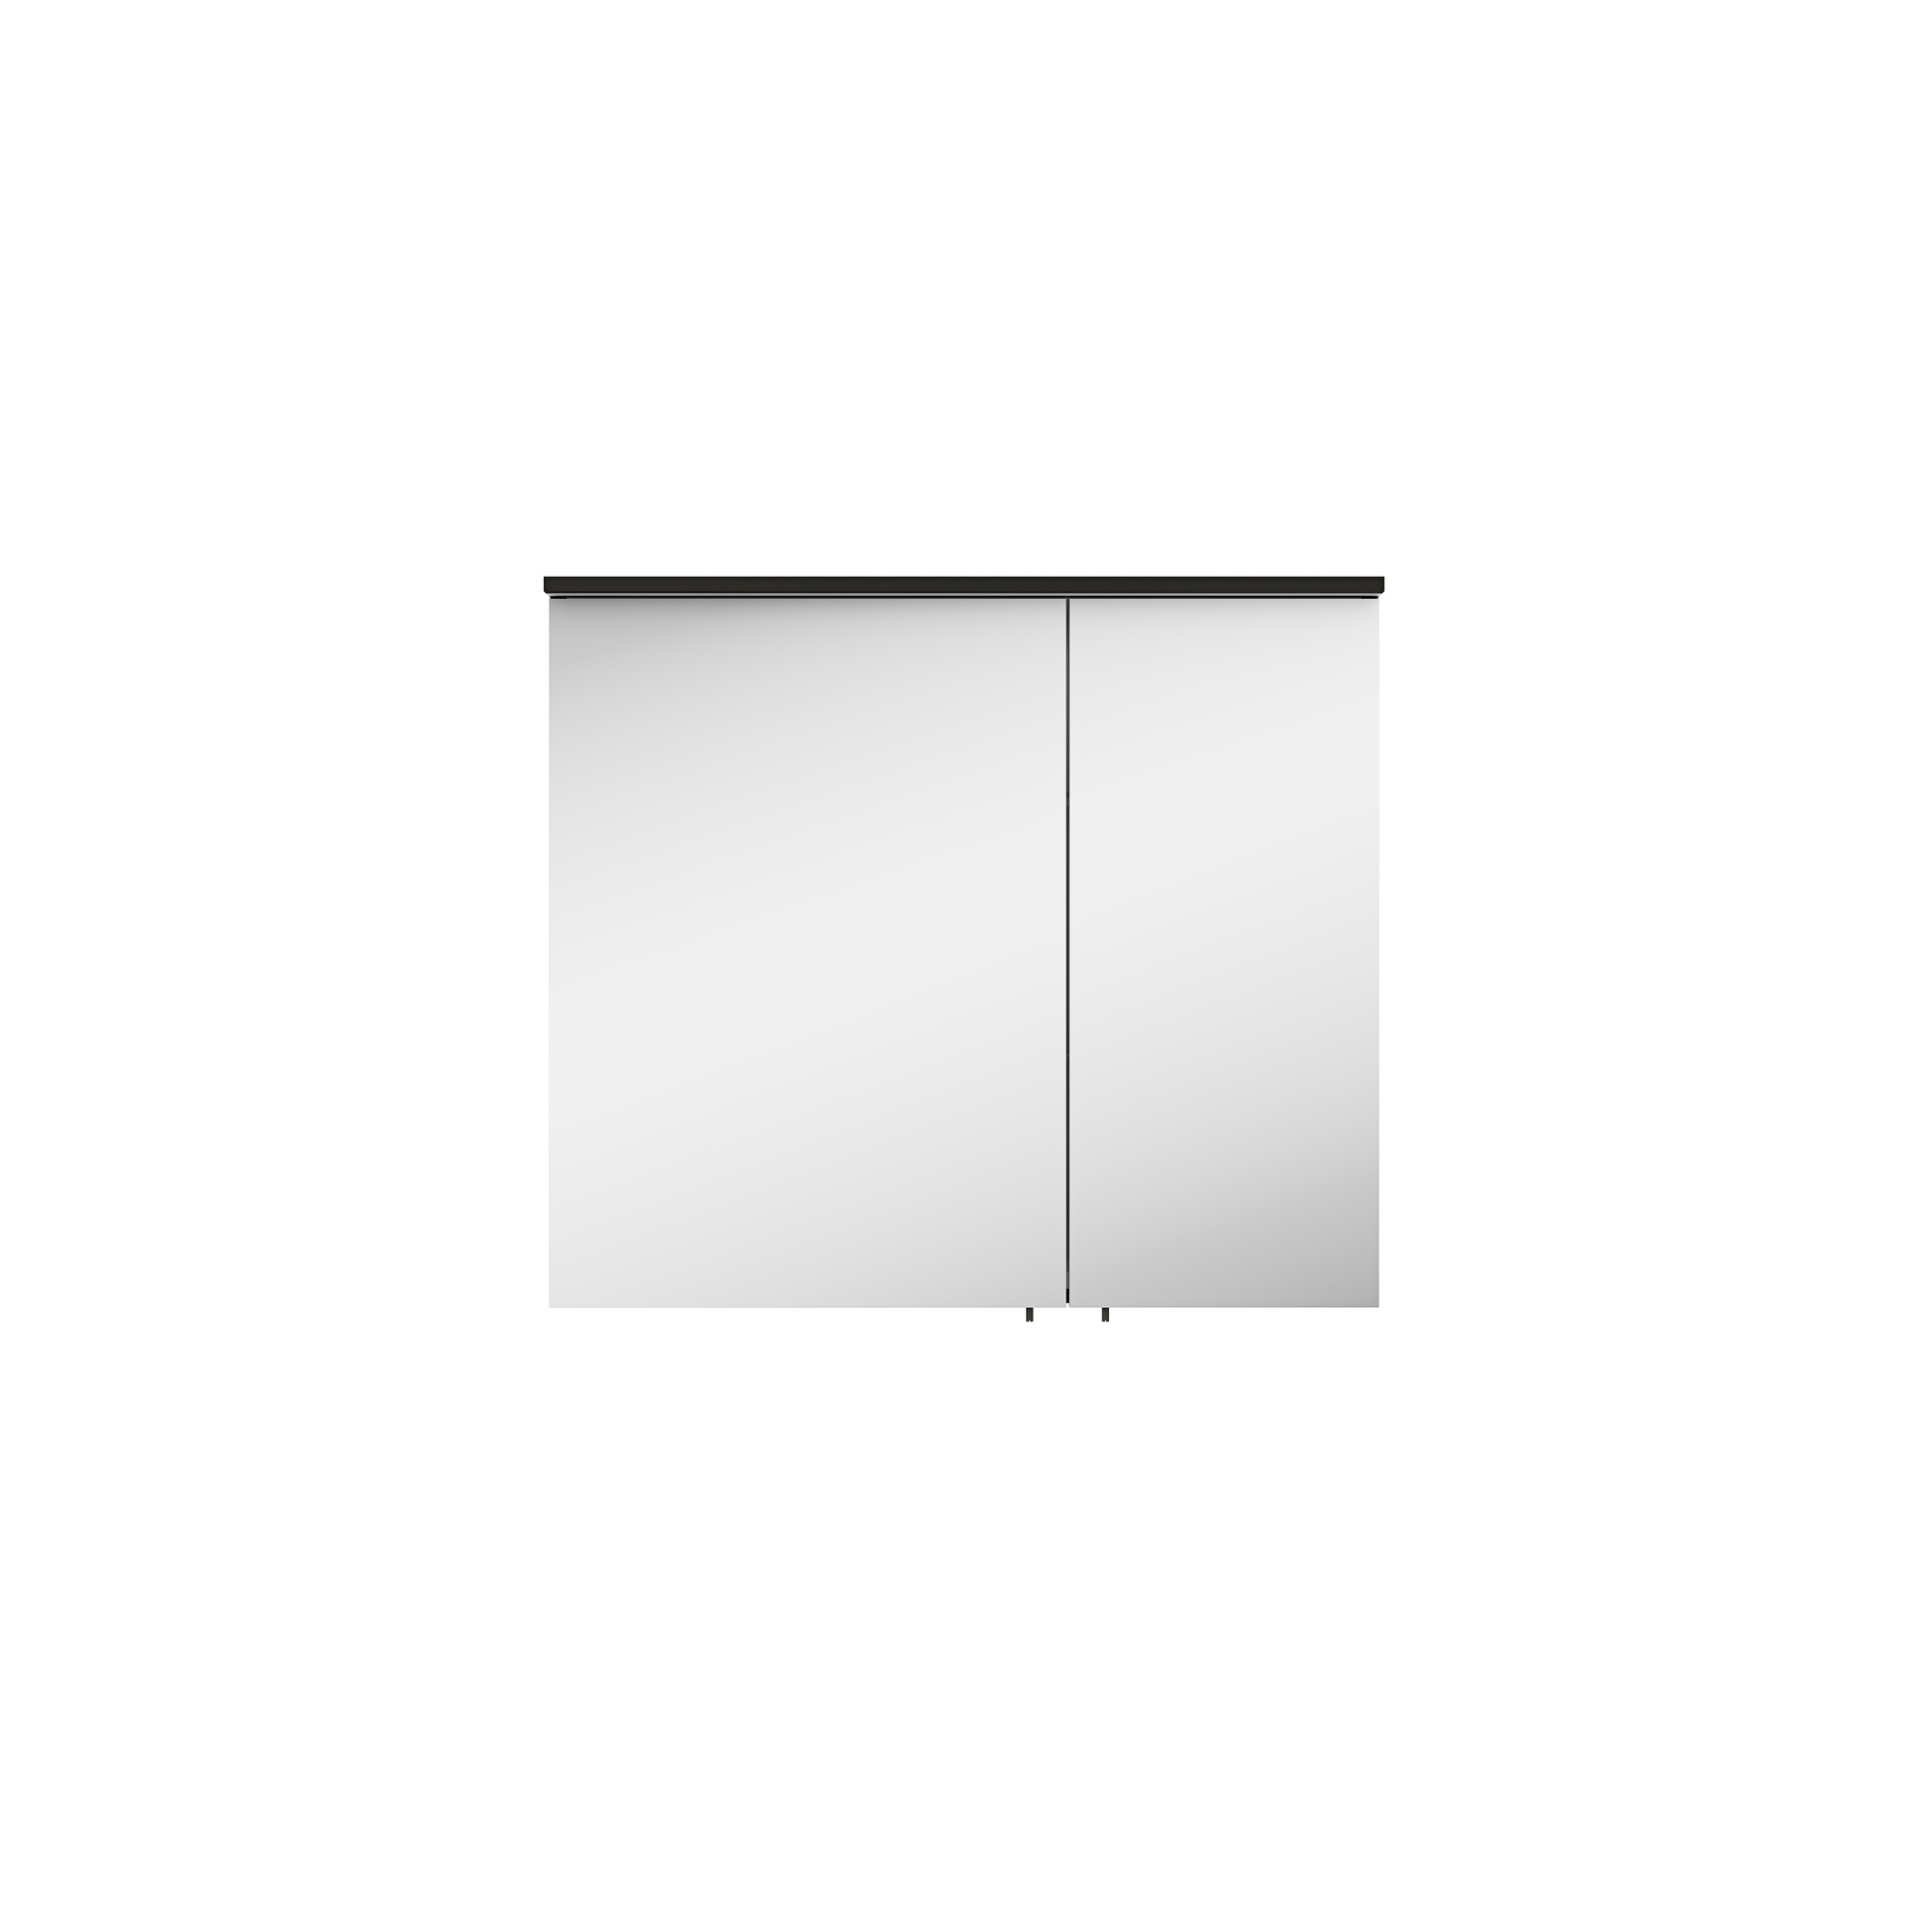 Spiegelschrank 'OPTIpremio 2510clarus' schwarz 80 x 69,6 x 17,6 cm + product picture